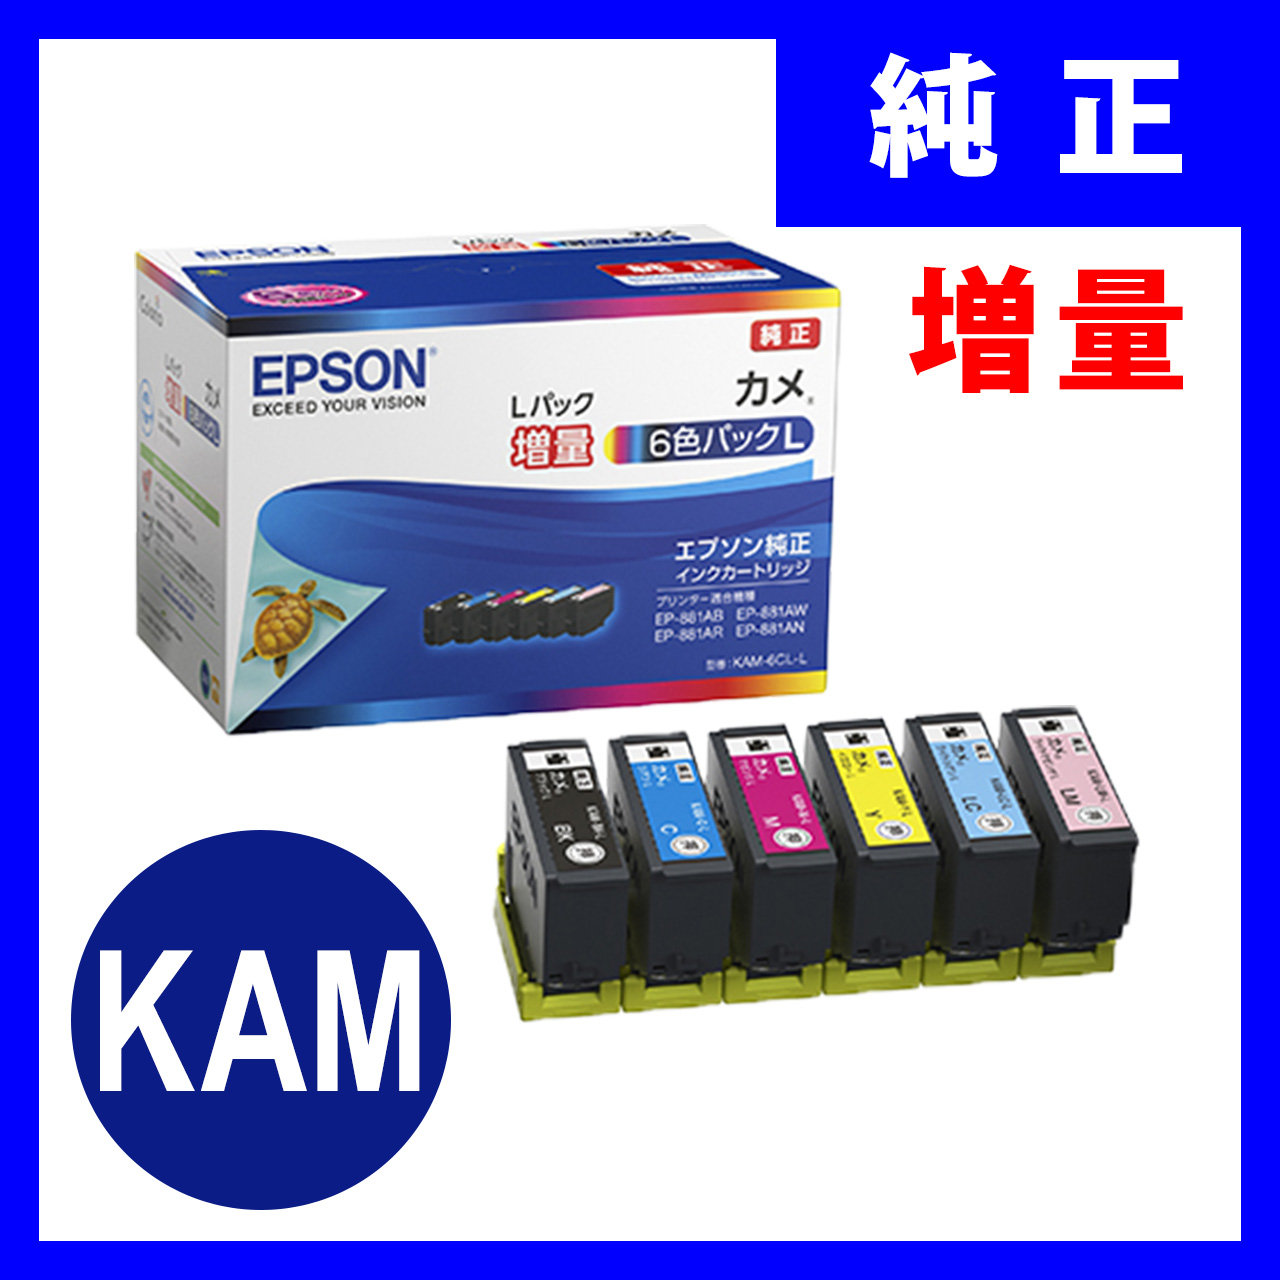 新品 エプソン インク KAM-6CL-L カメ 増量 セット EPSONプリンタ